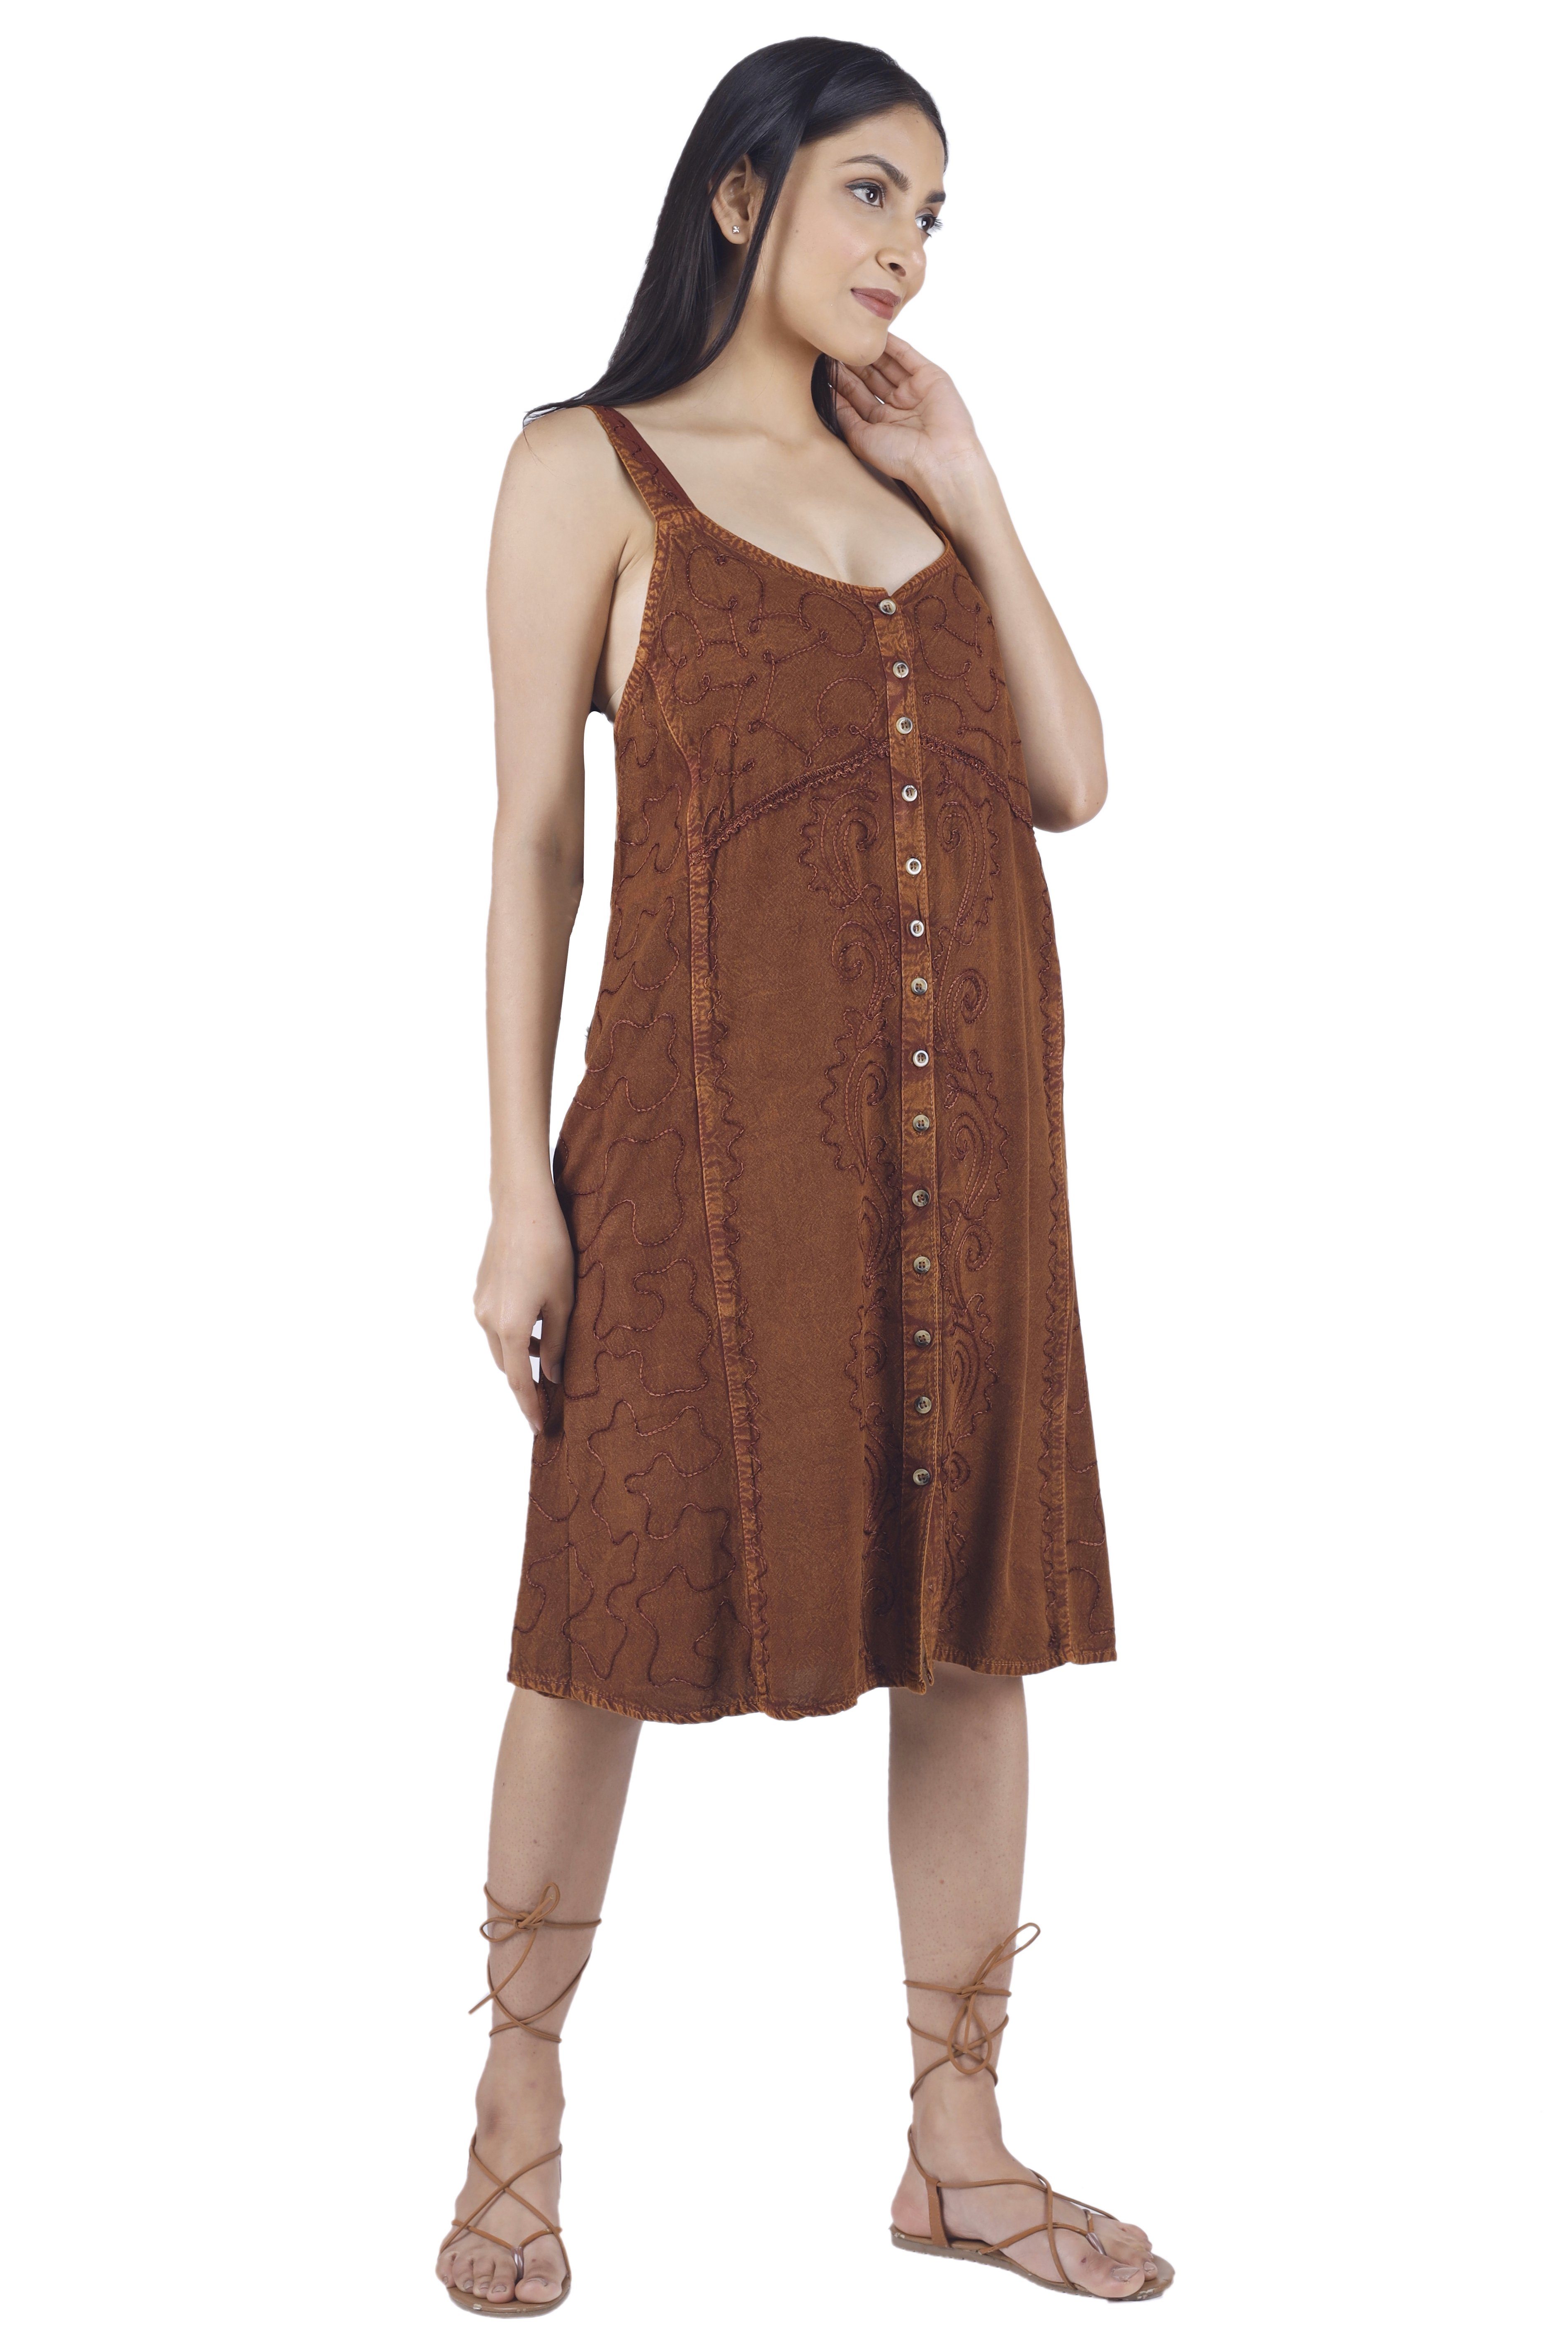 Guru-Shop Minikleid Besticktes indisches Kleid, Bekleidung braun/Design Midikleid -.. 23 Boho alternative